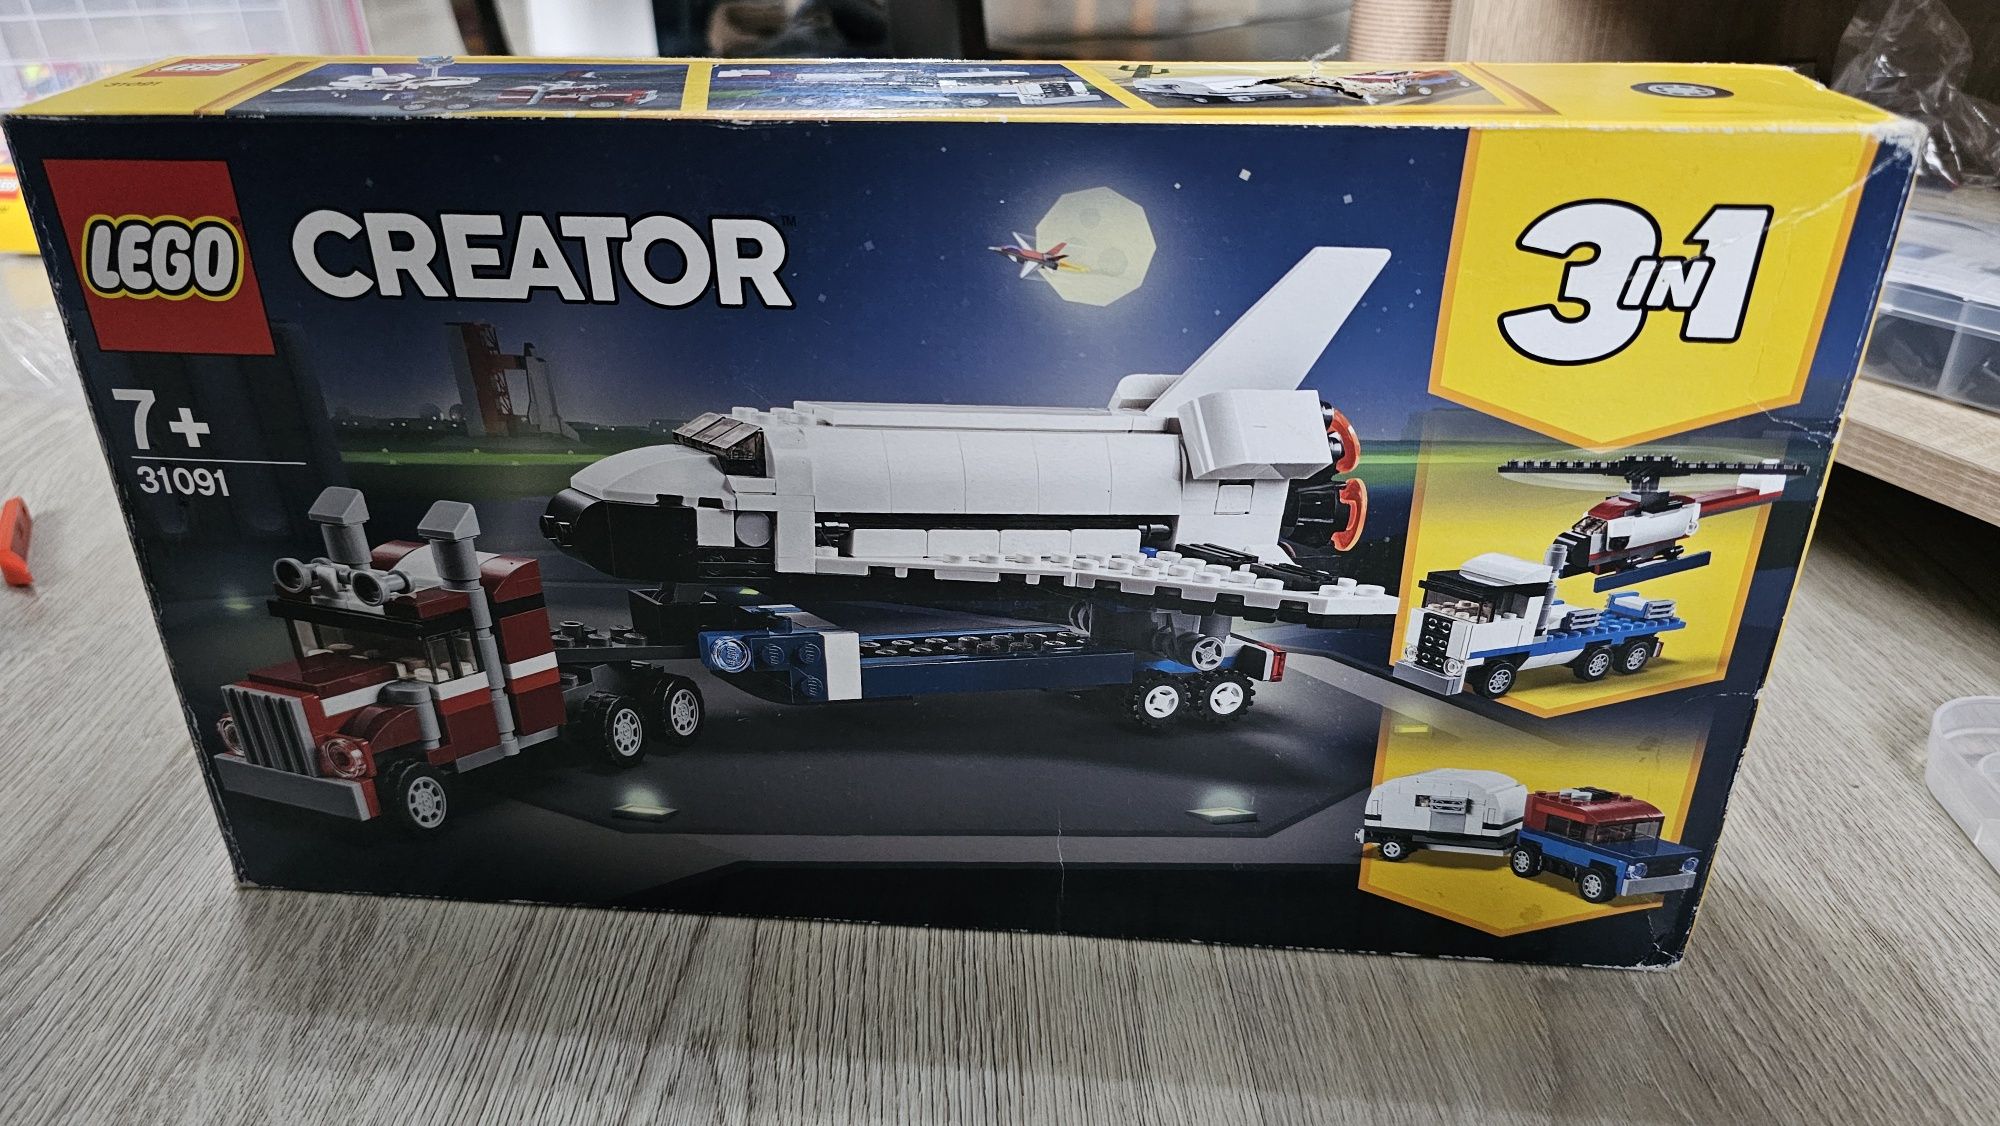 Transportorul navetei spatiale (31091) - LEGO 3 in 1